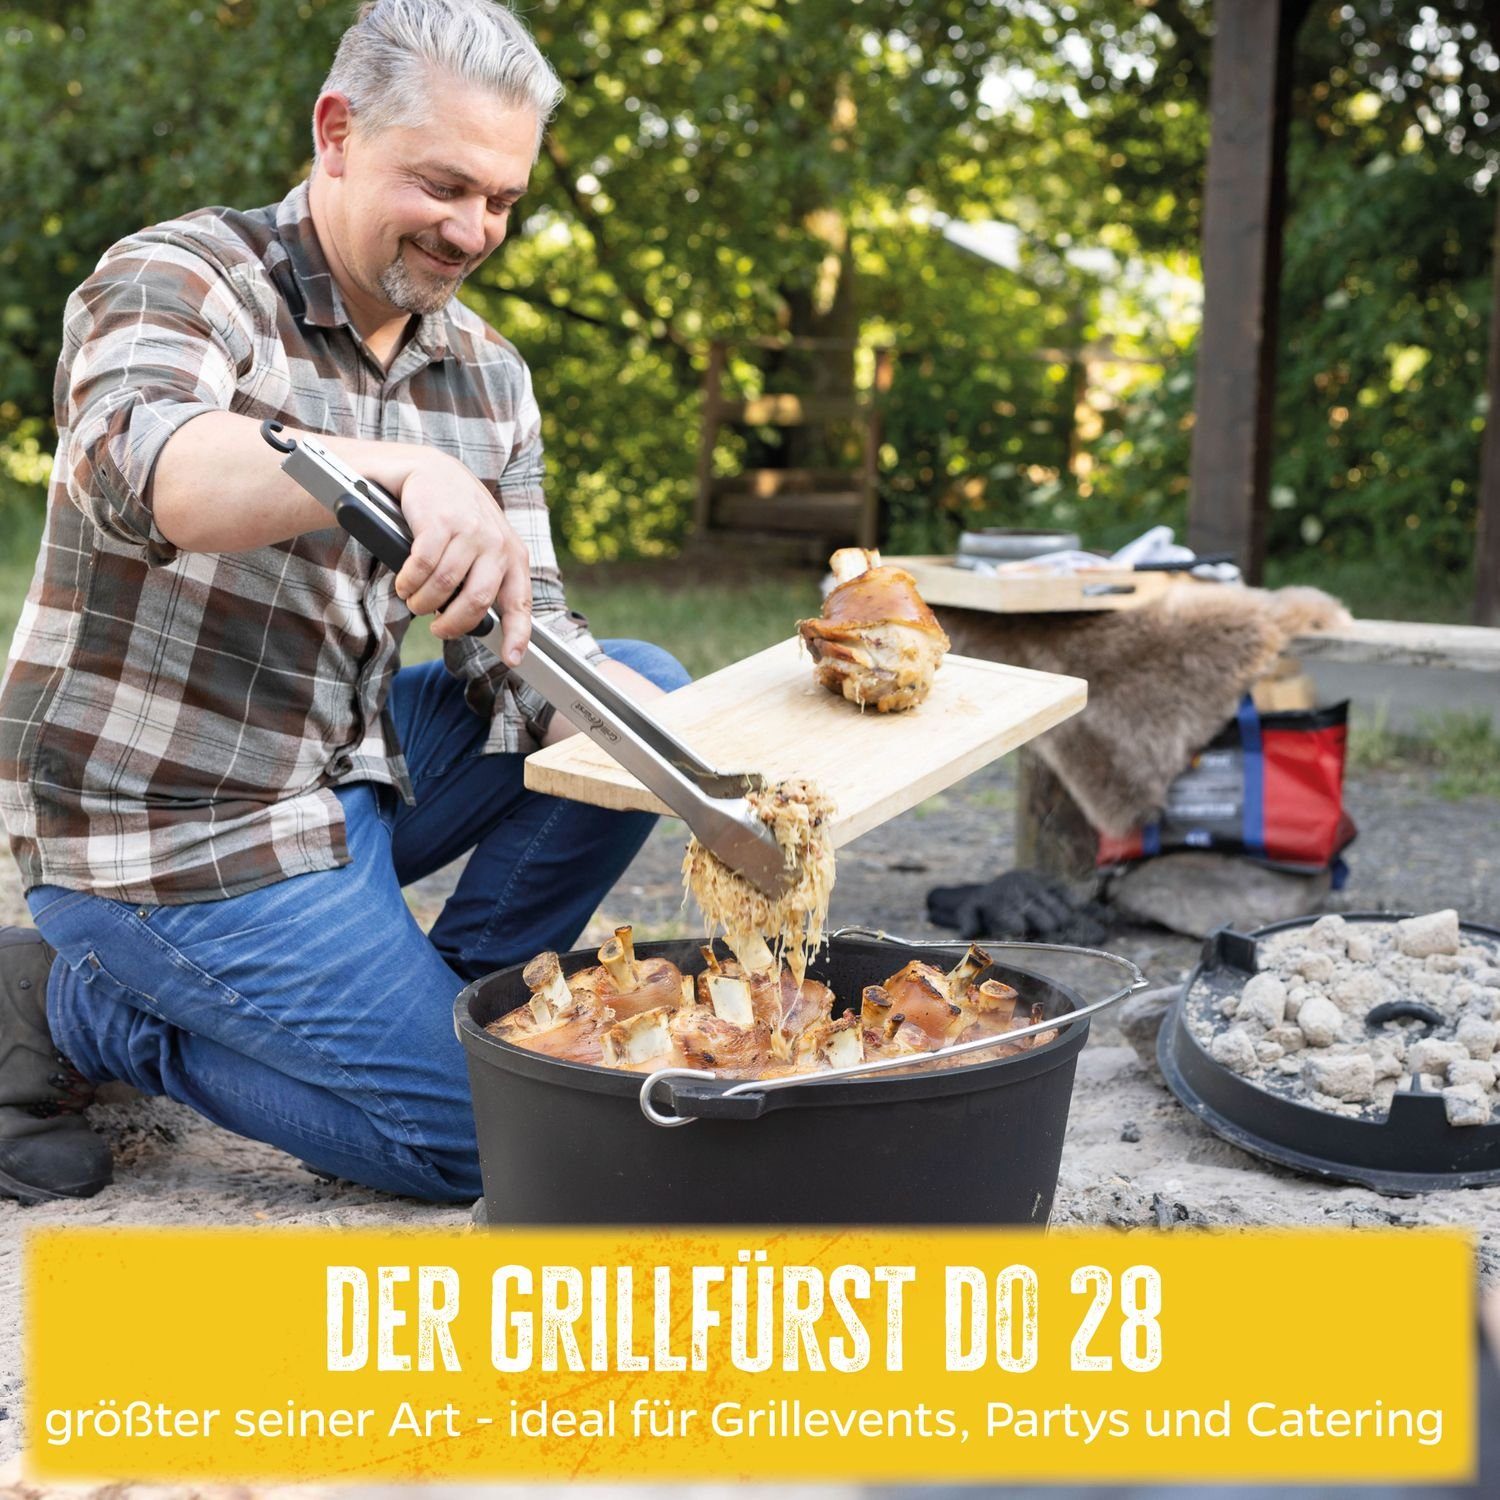 Grillfürst Oven Dutch DO28 Grillfürst Edition BBQ Bratentopf